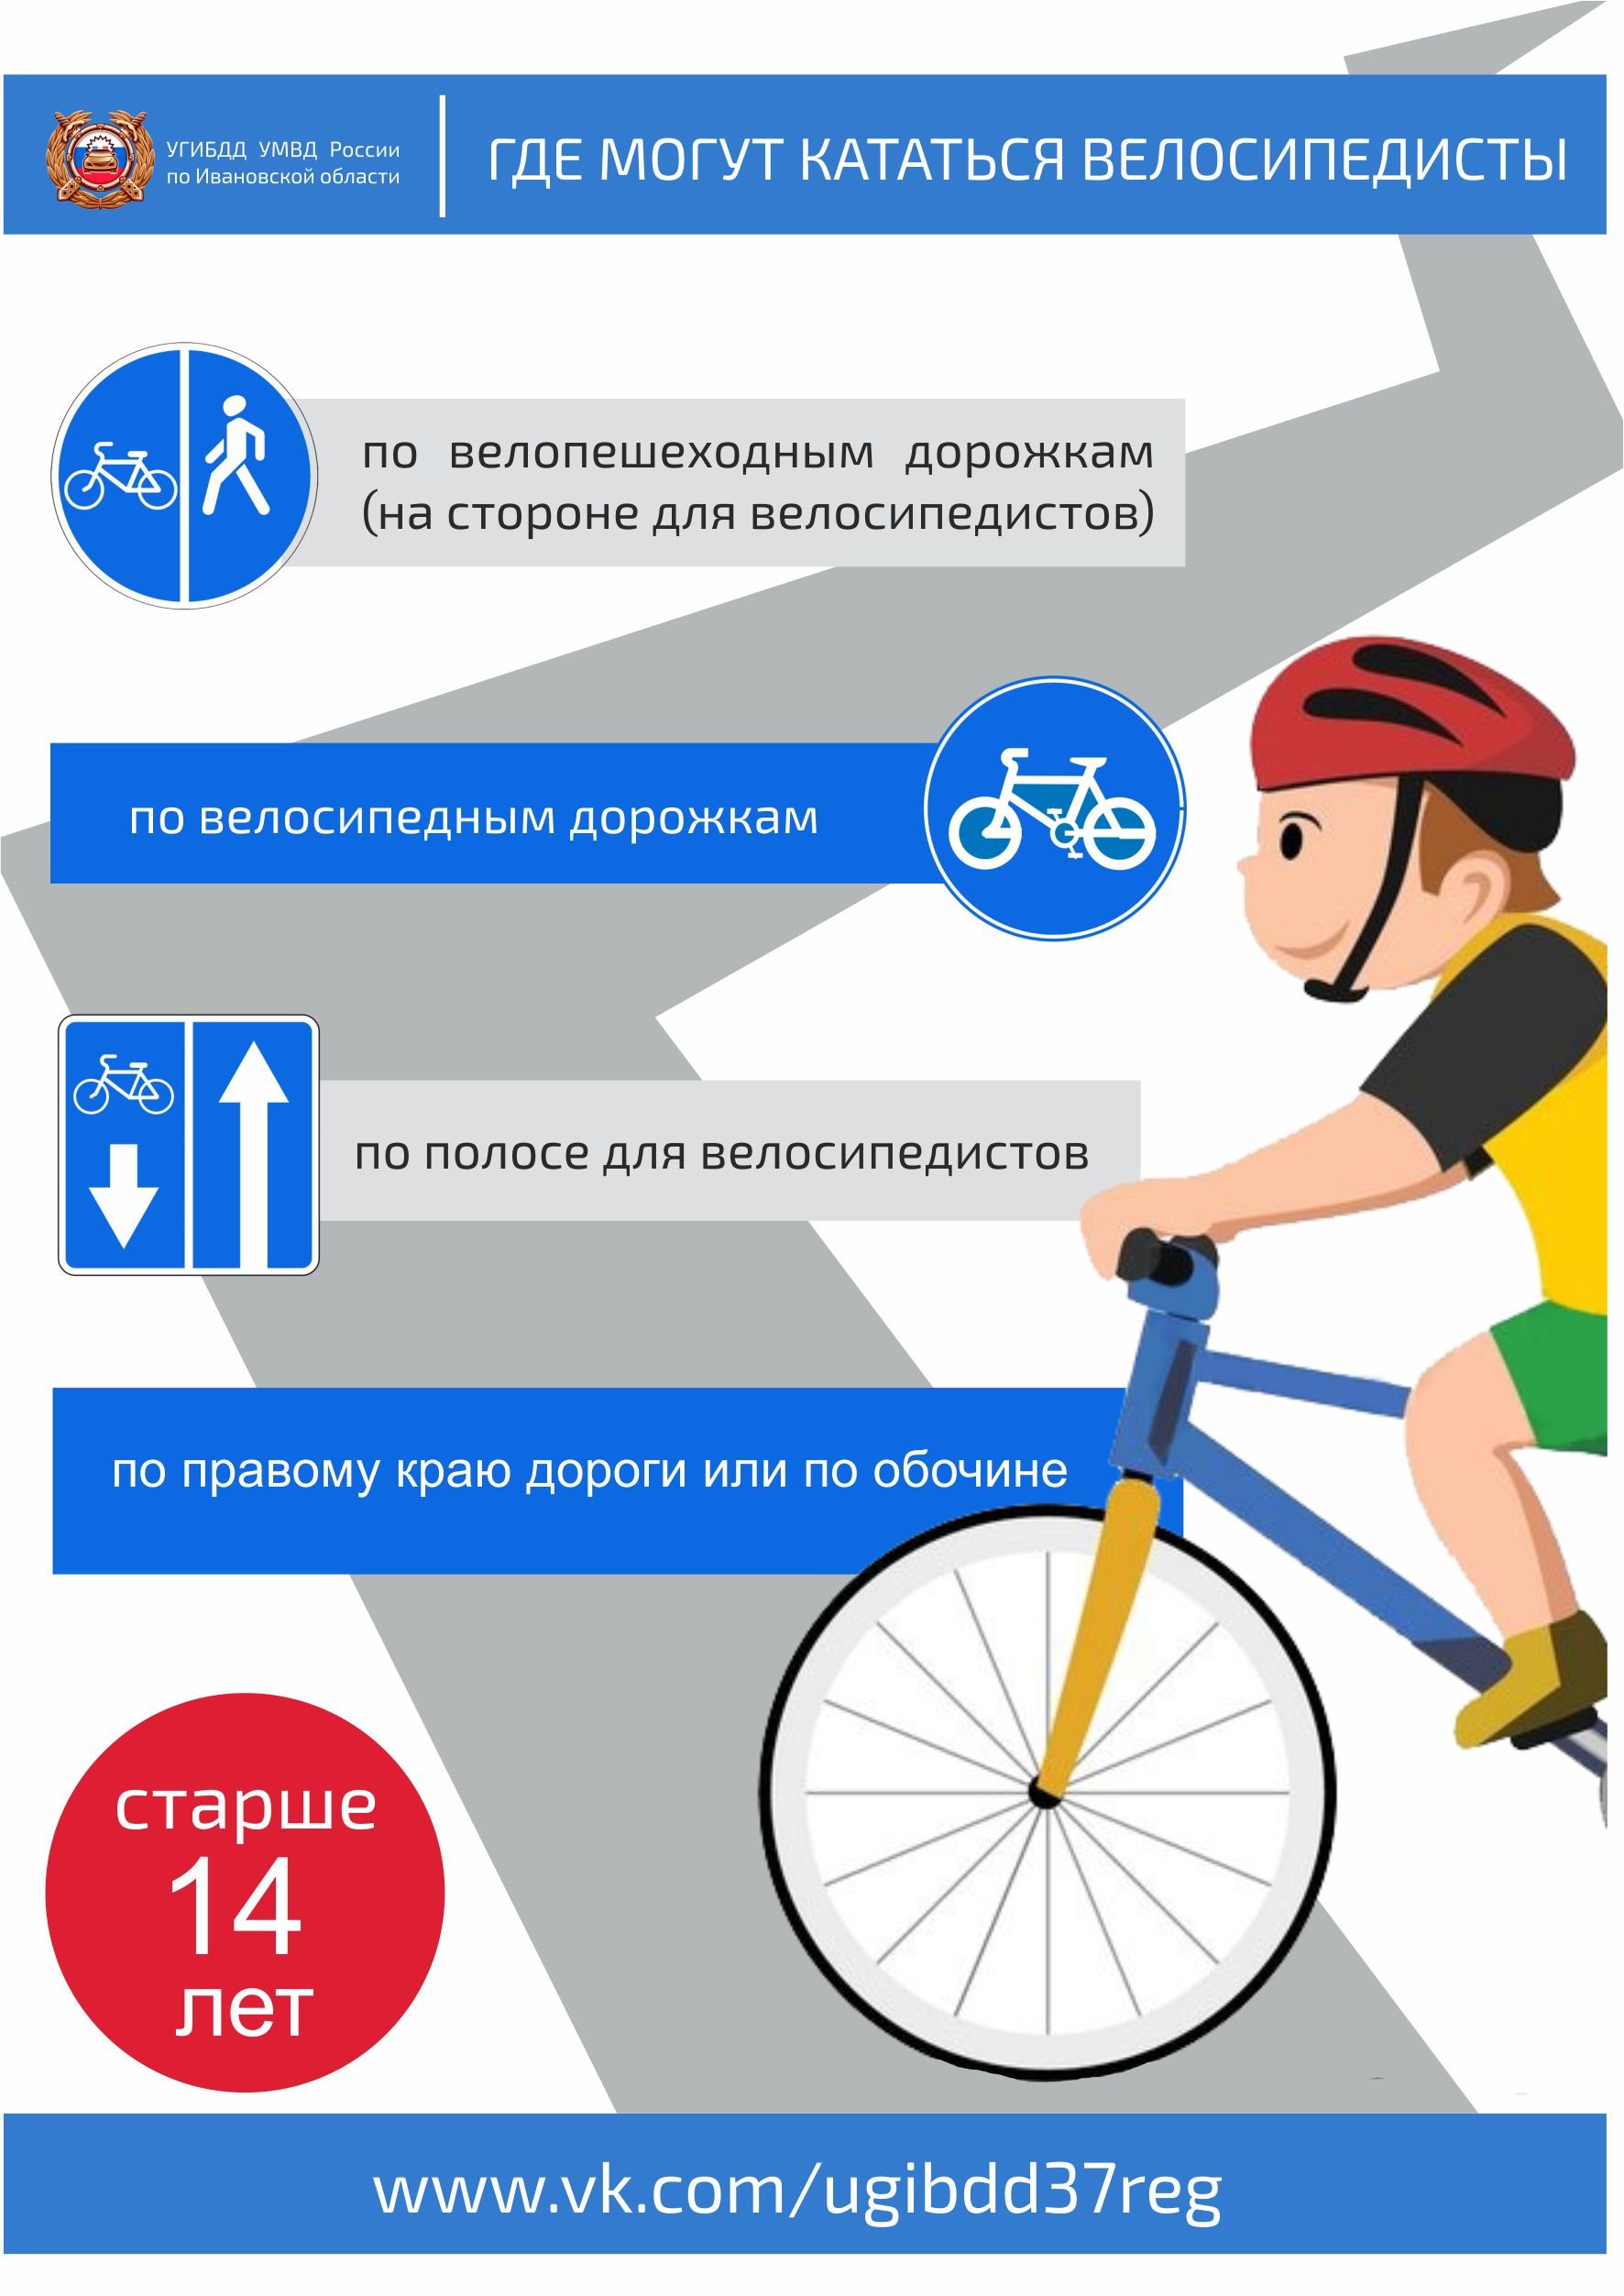 Можно ли кататься на велосипеде после. Правила для велосипедистов. Правило велосипедиста. Безопасность велосипедиста. ПДД для велосипедистов.